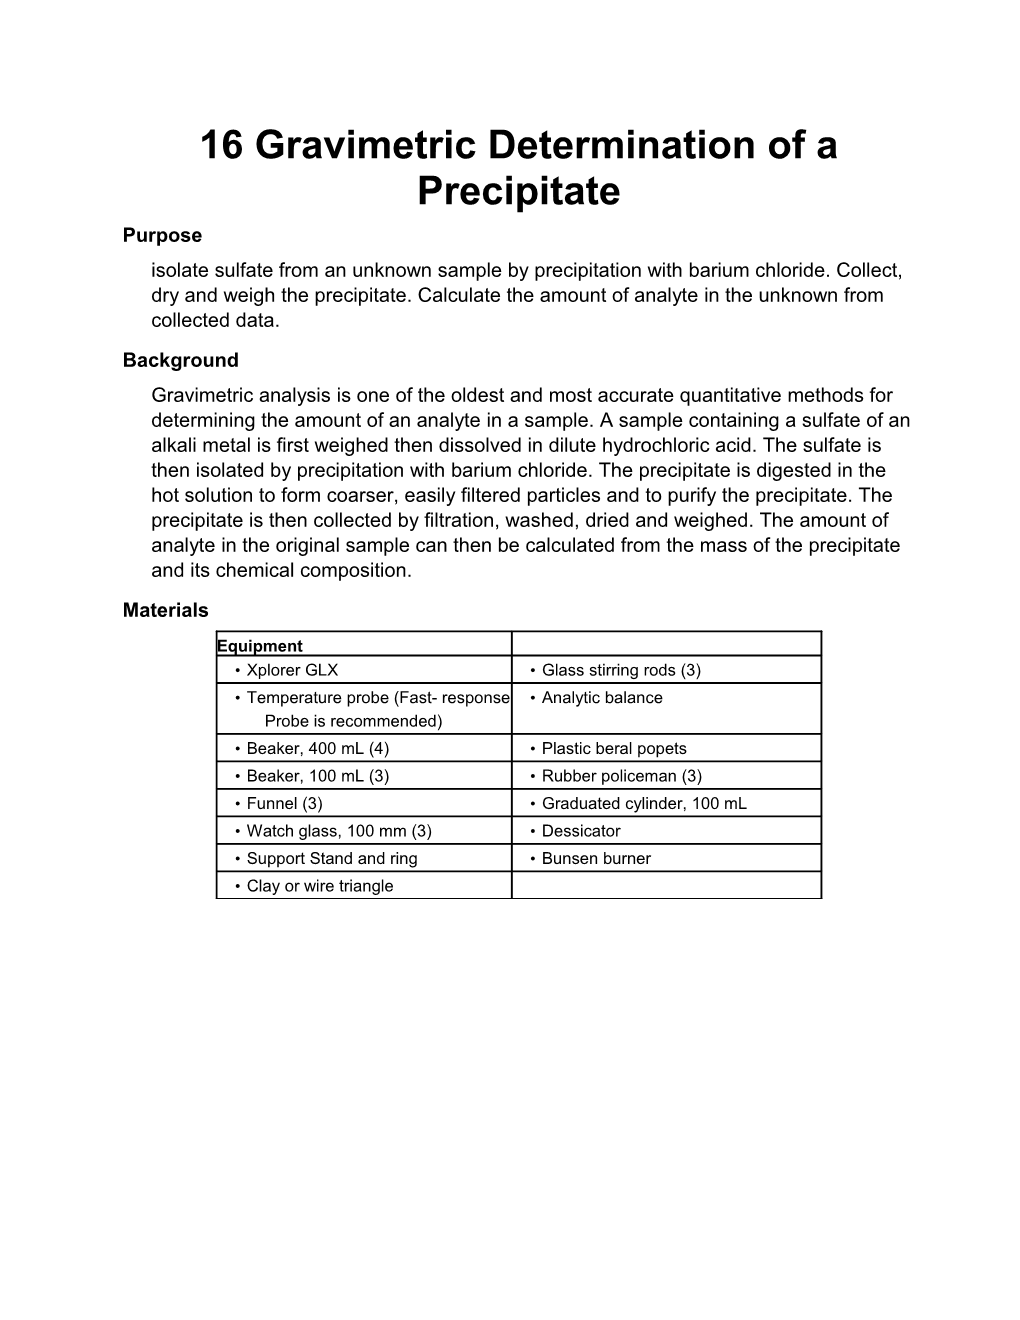 16 Gravimetric Determination of a Precipitate